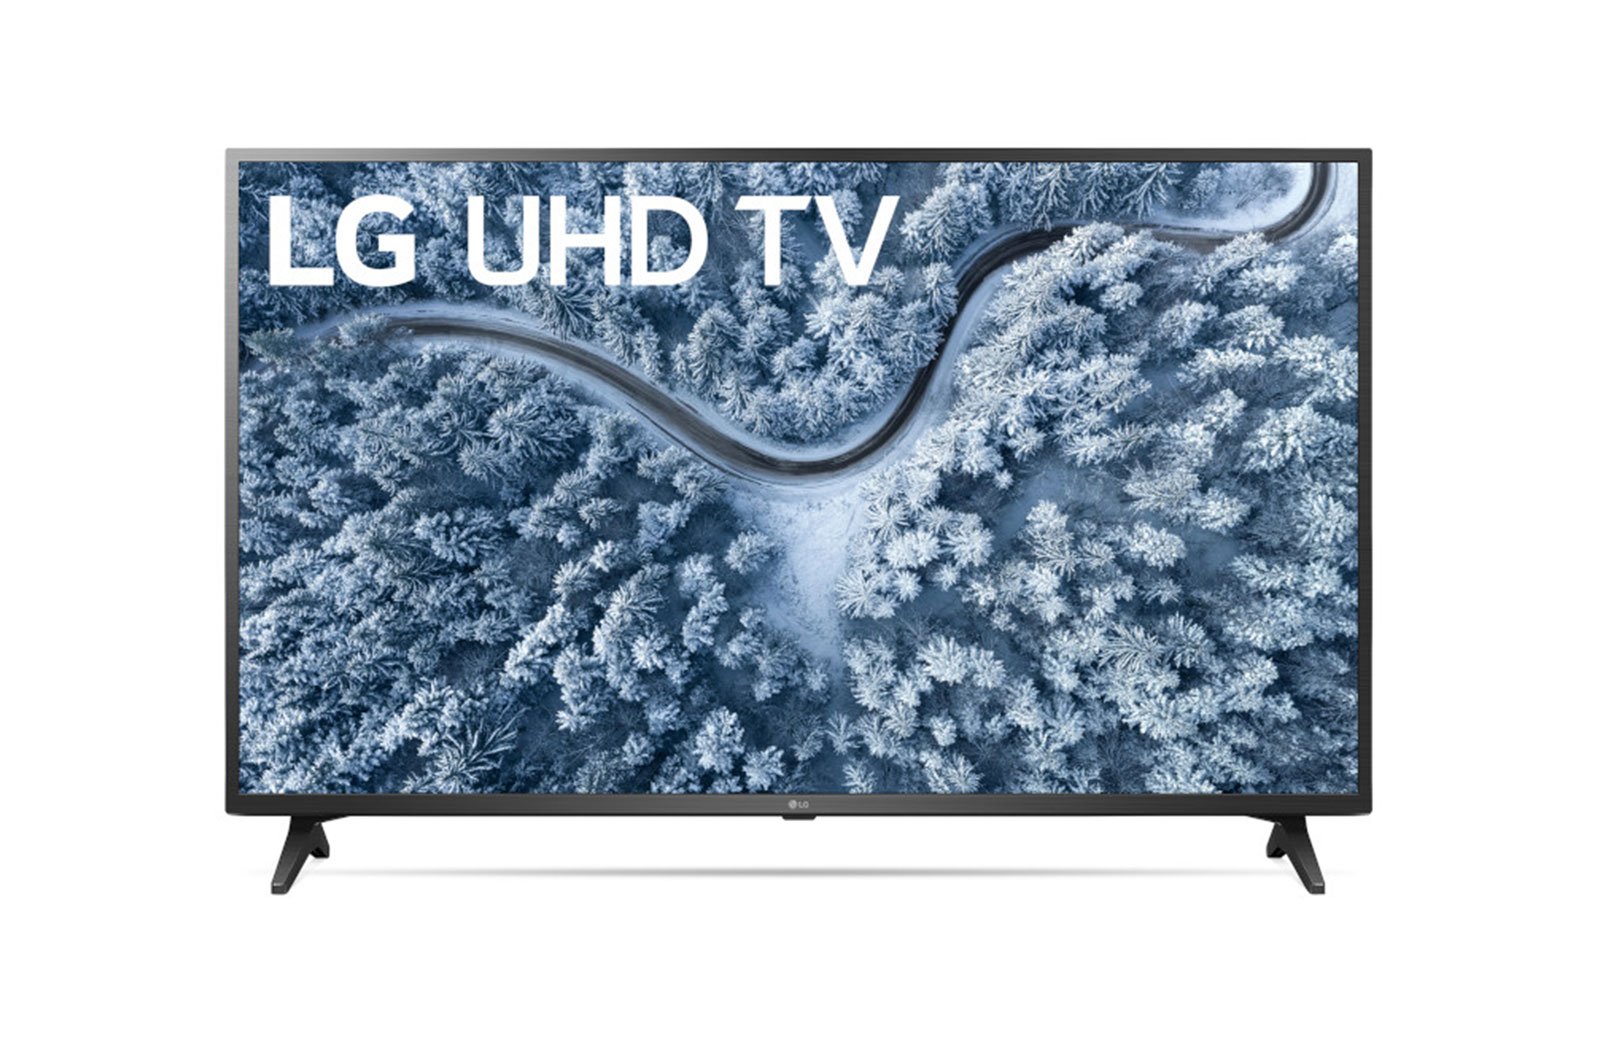 Pantalla Smart TV LG UN6955 - ¡Al Mejor Precio! | Intercompras